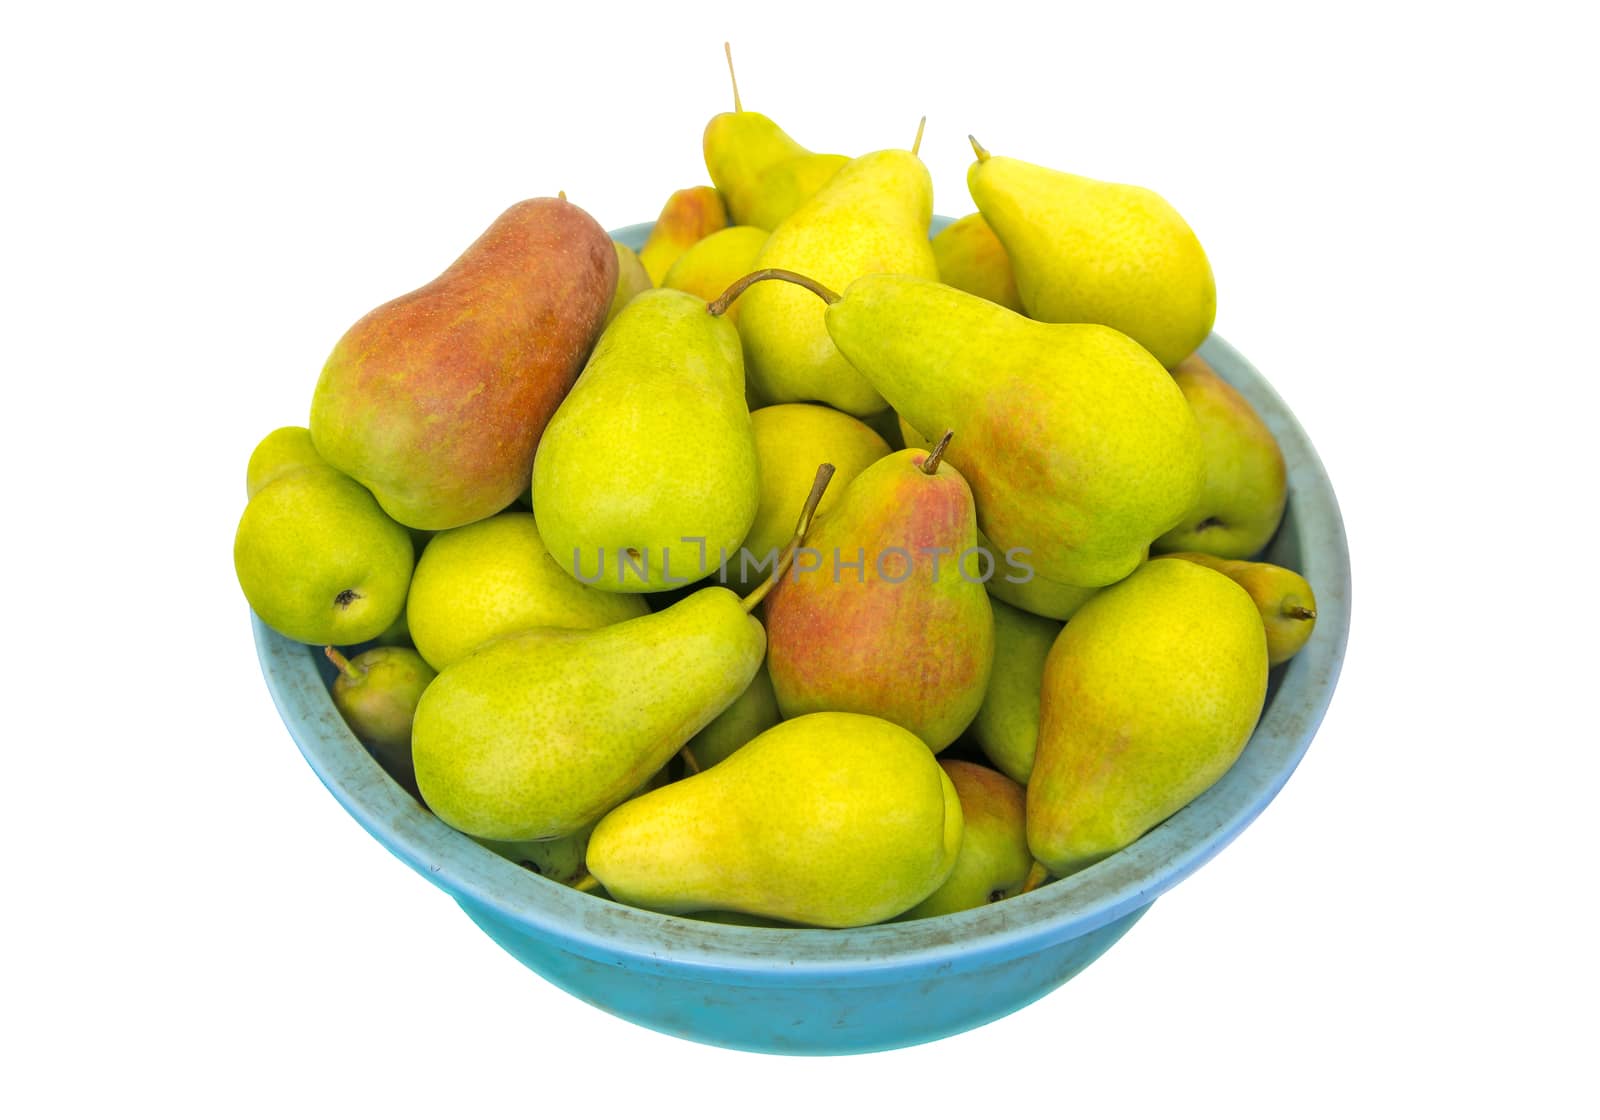 Pears in basket by Venakr